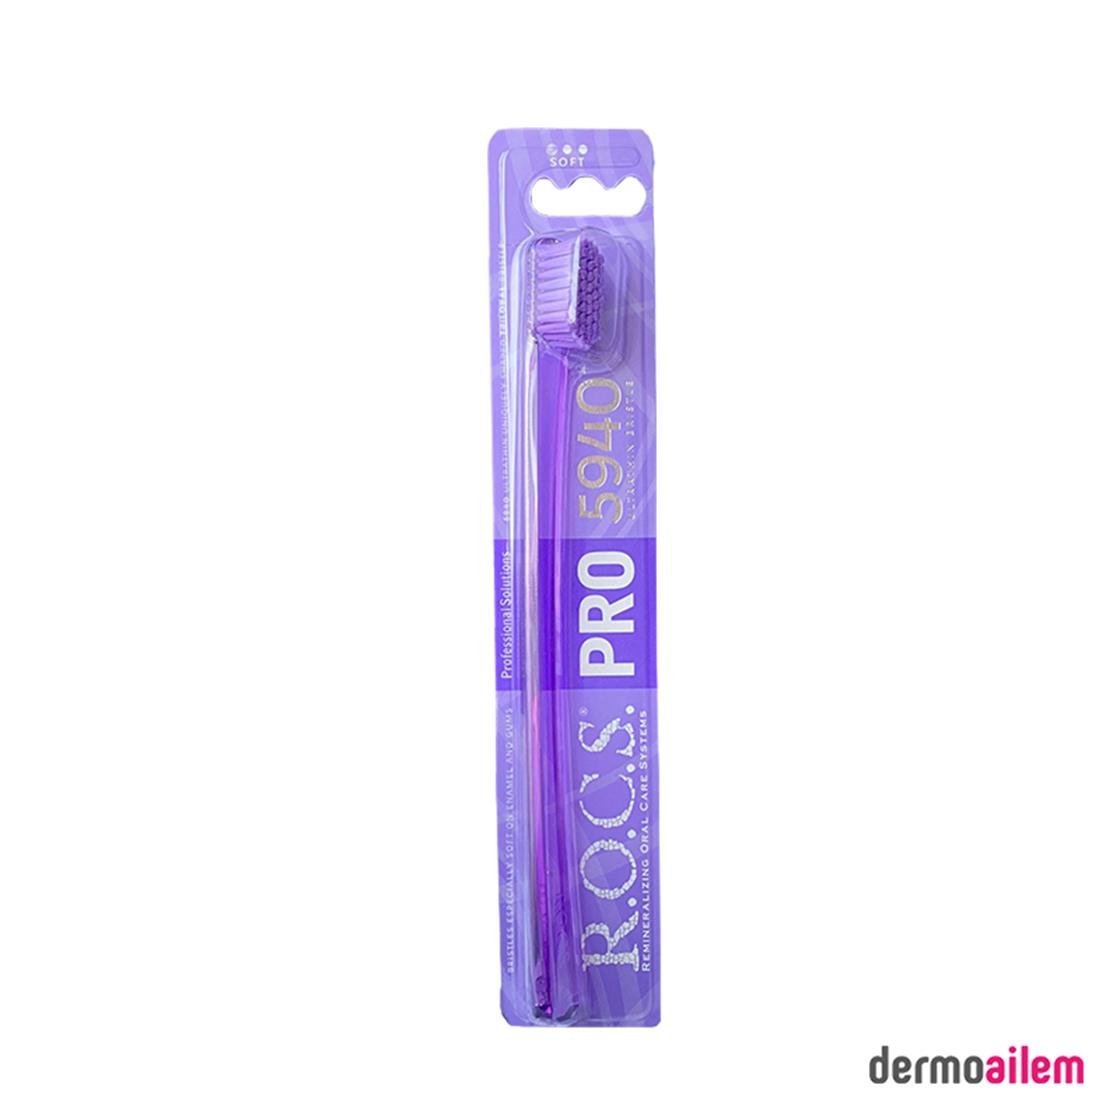 Rocs Pro 5940 Soft Diş Fırçası | Dermoailem